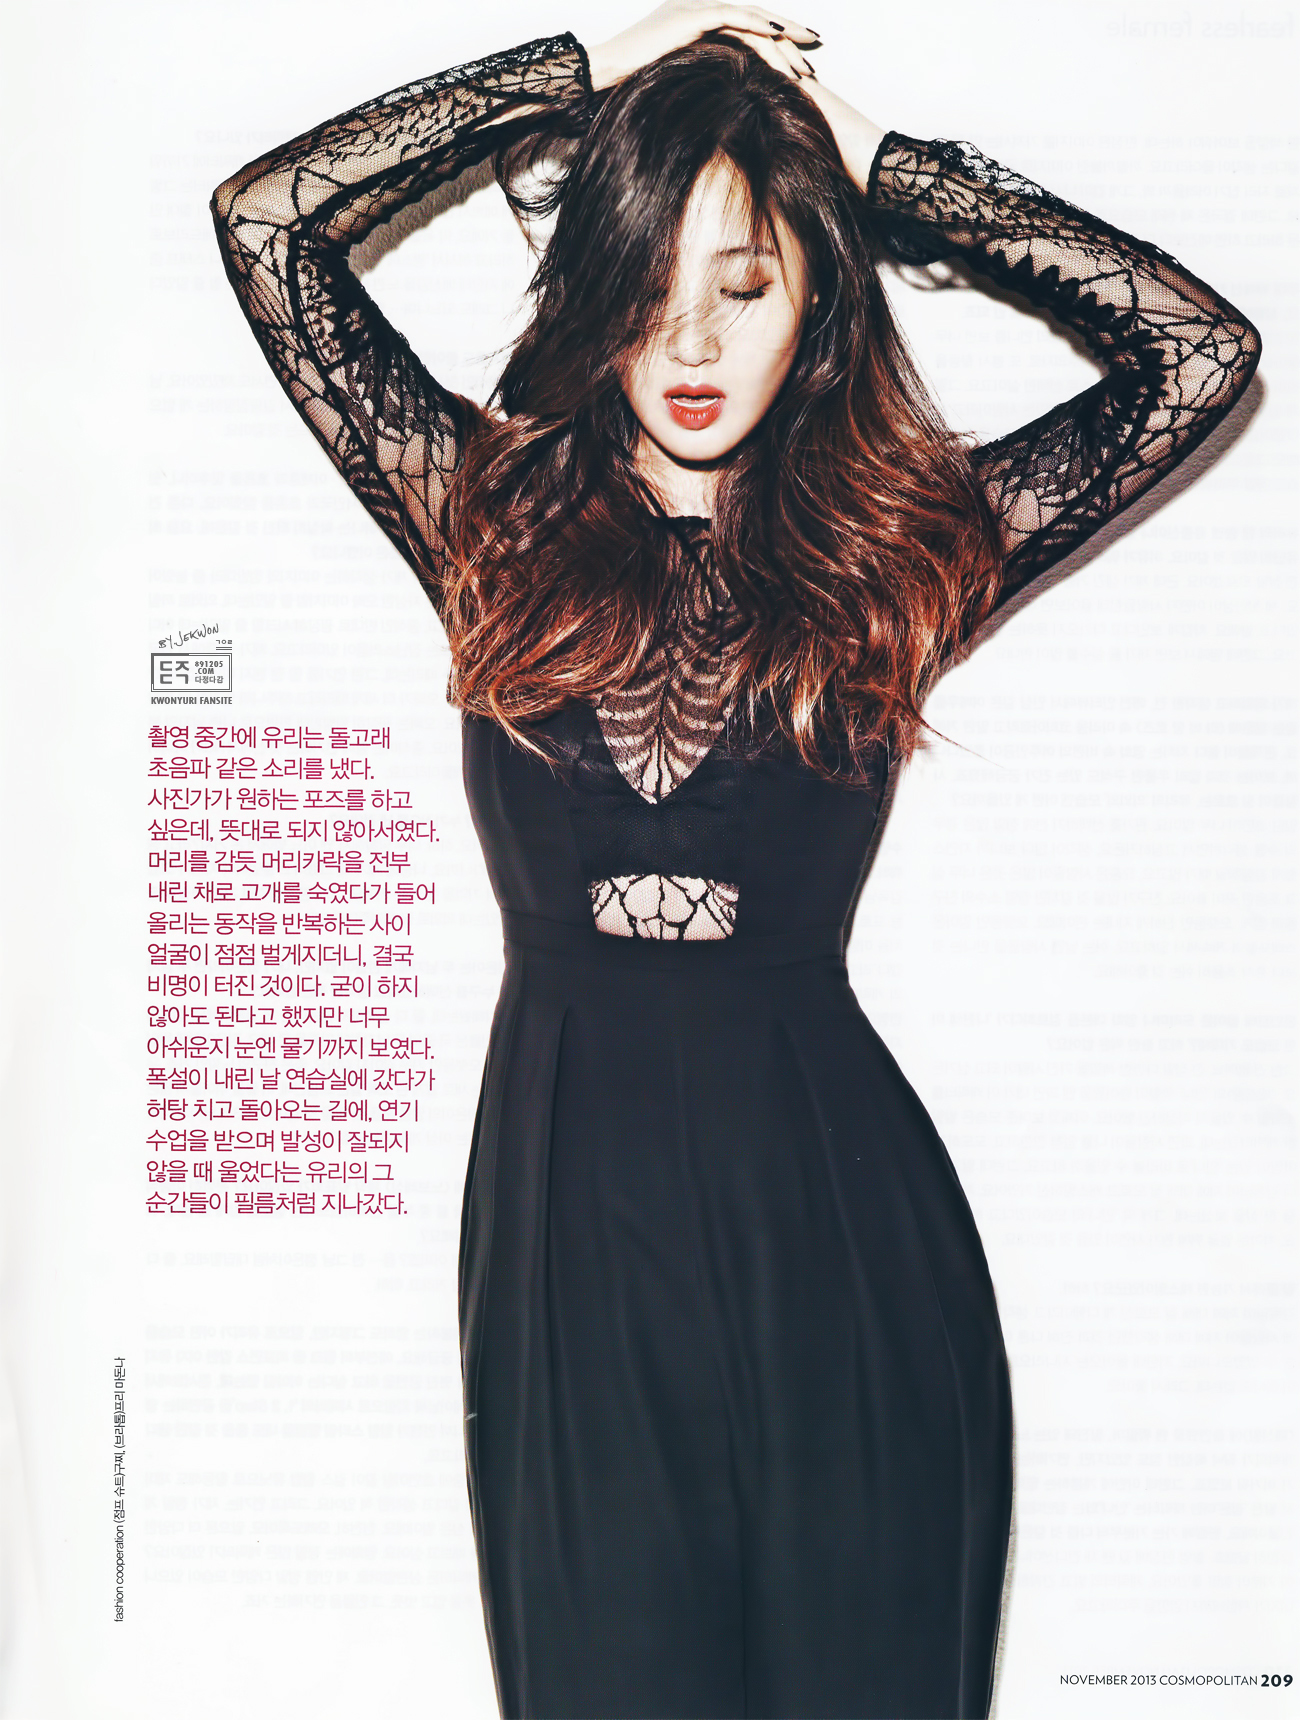 [PIC][17-10-2013]Yuri đầy quyến rũ trên ấn phẩm tháng 11 của tạp chí "Cosmopolitan" 263D19365264CE5D020079